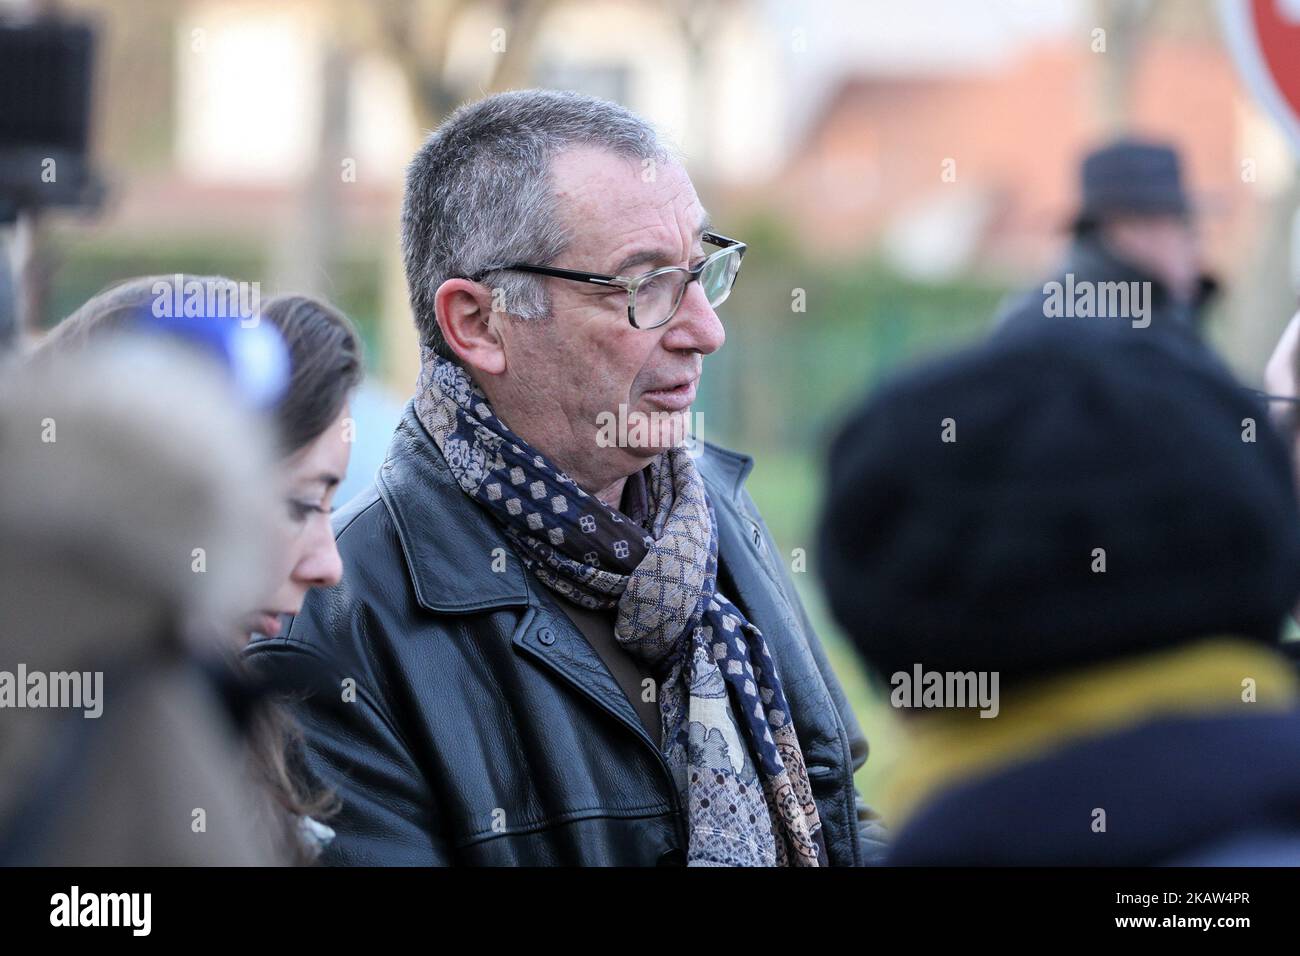 Eric Mouzin (C), padre de Estelle Mouzin, participa en una marcha silenciosa en memoria de su hija, el 13 de enero de 2018 en Guermantes, cerca de París, quince años después de la desaparición de la niña de nueve años. Estelle Mouzin desapareció el 9 de enero de 2003 en la aldea de Guermantes a unos 26 kilómetros de París. (Foto de Michel Stoupak/NurPhoto) Foto de stock